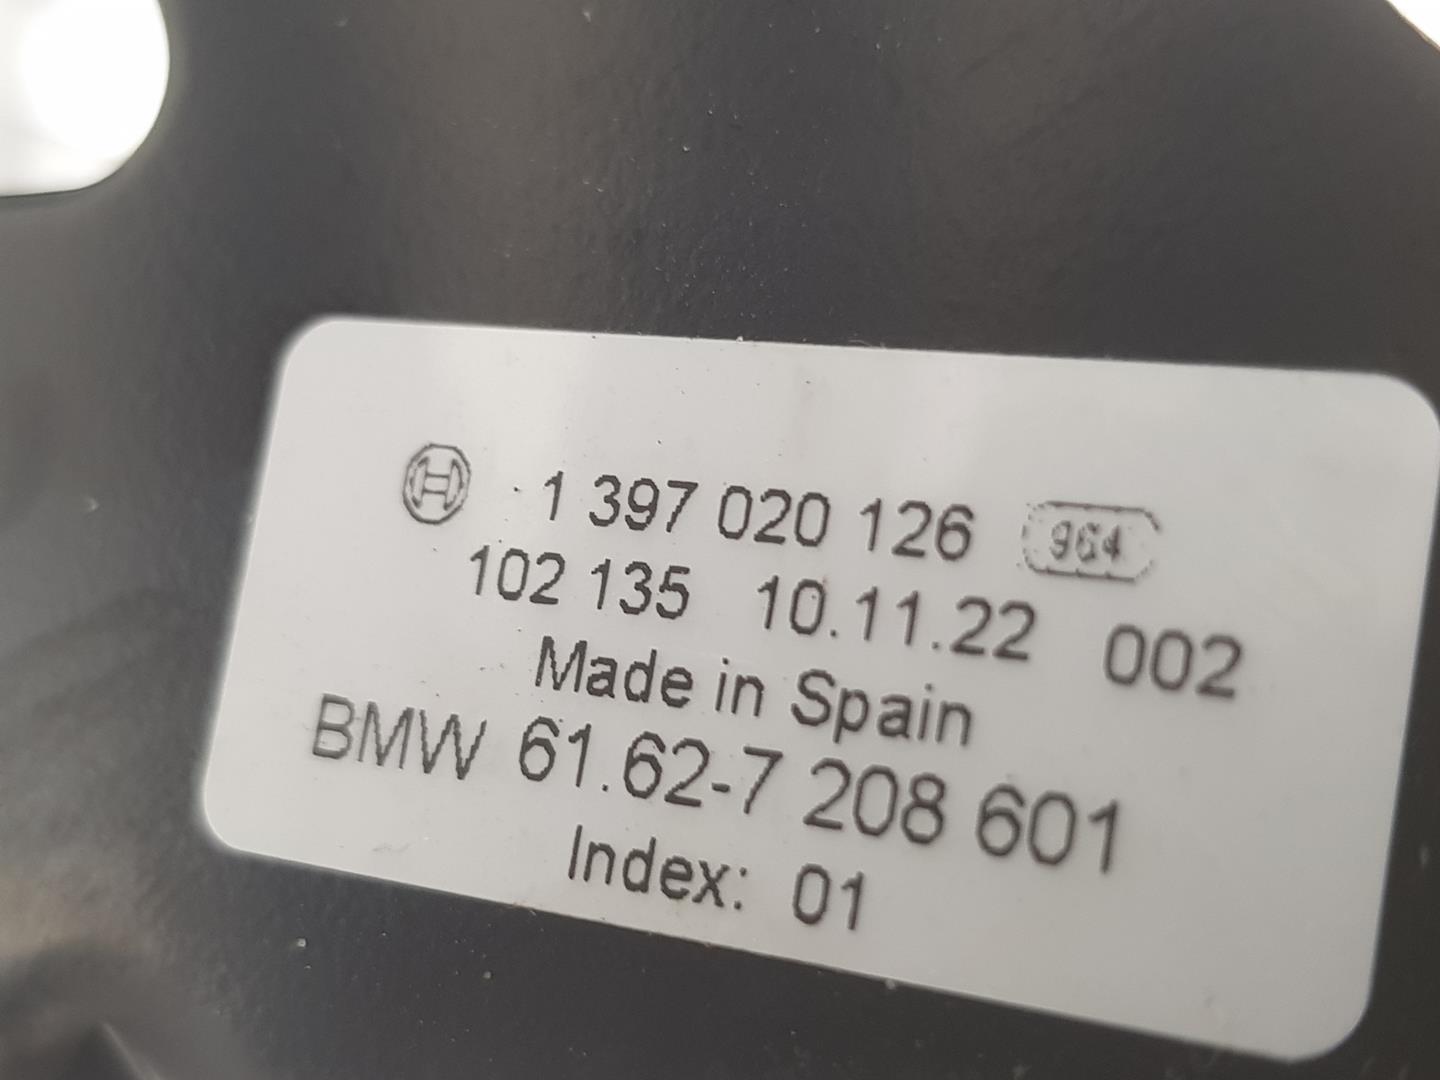 BMW 3 Series E90/E91/E92/E93 (2004-2013) Моторчик заднего стеклоочистителя 61627208602 19832484